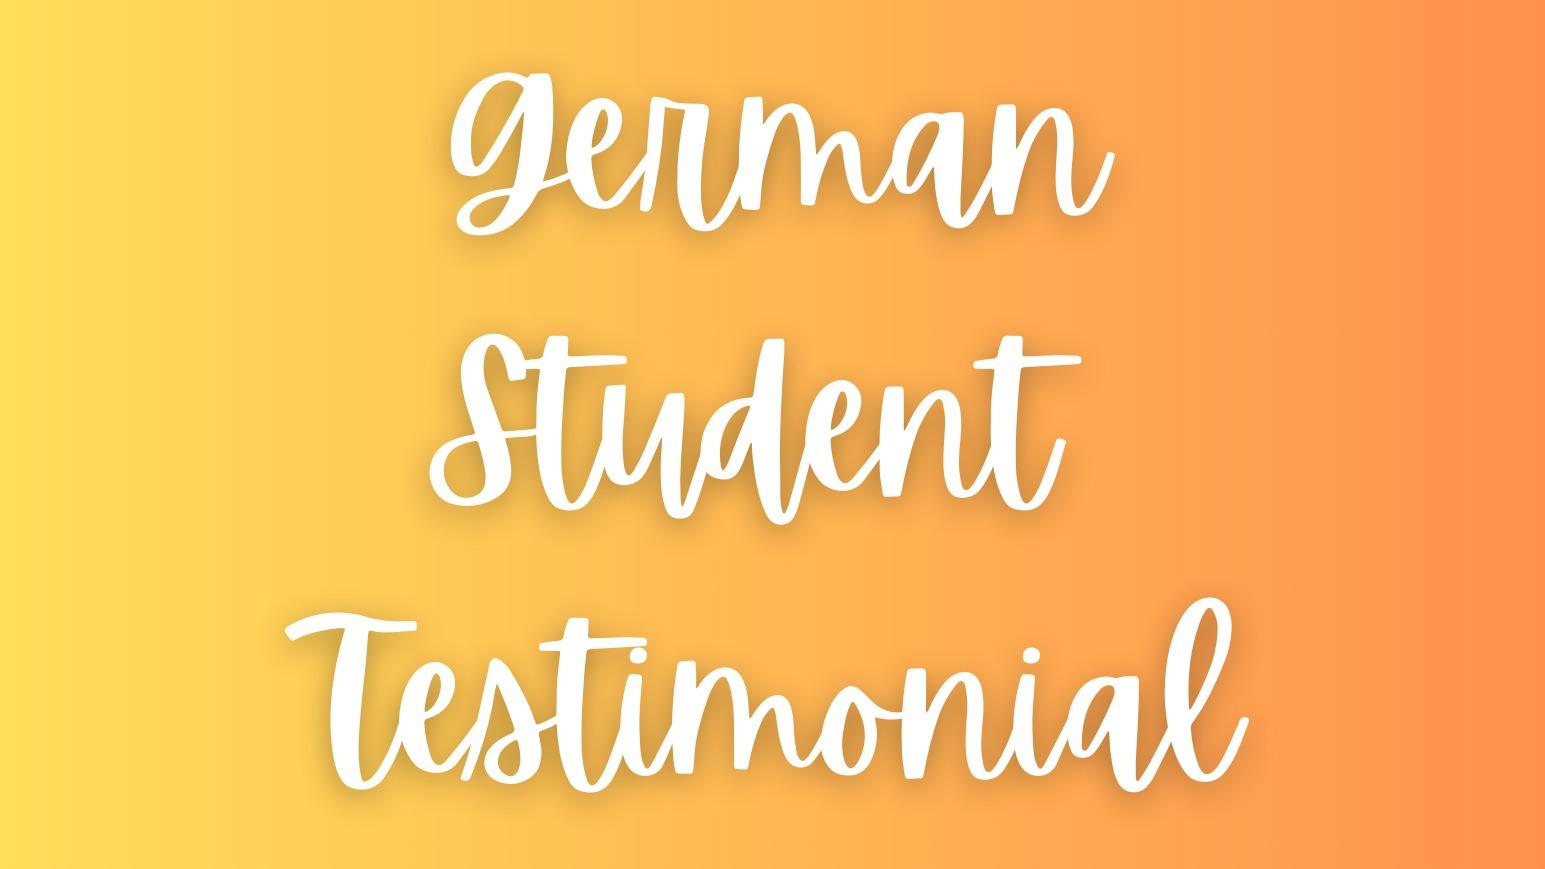 German Student Testimonial